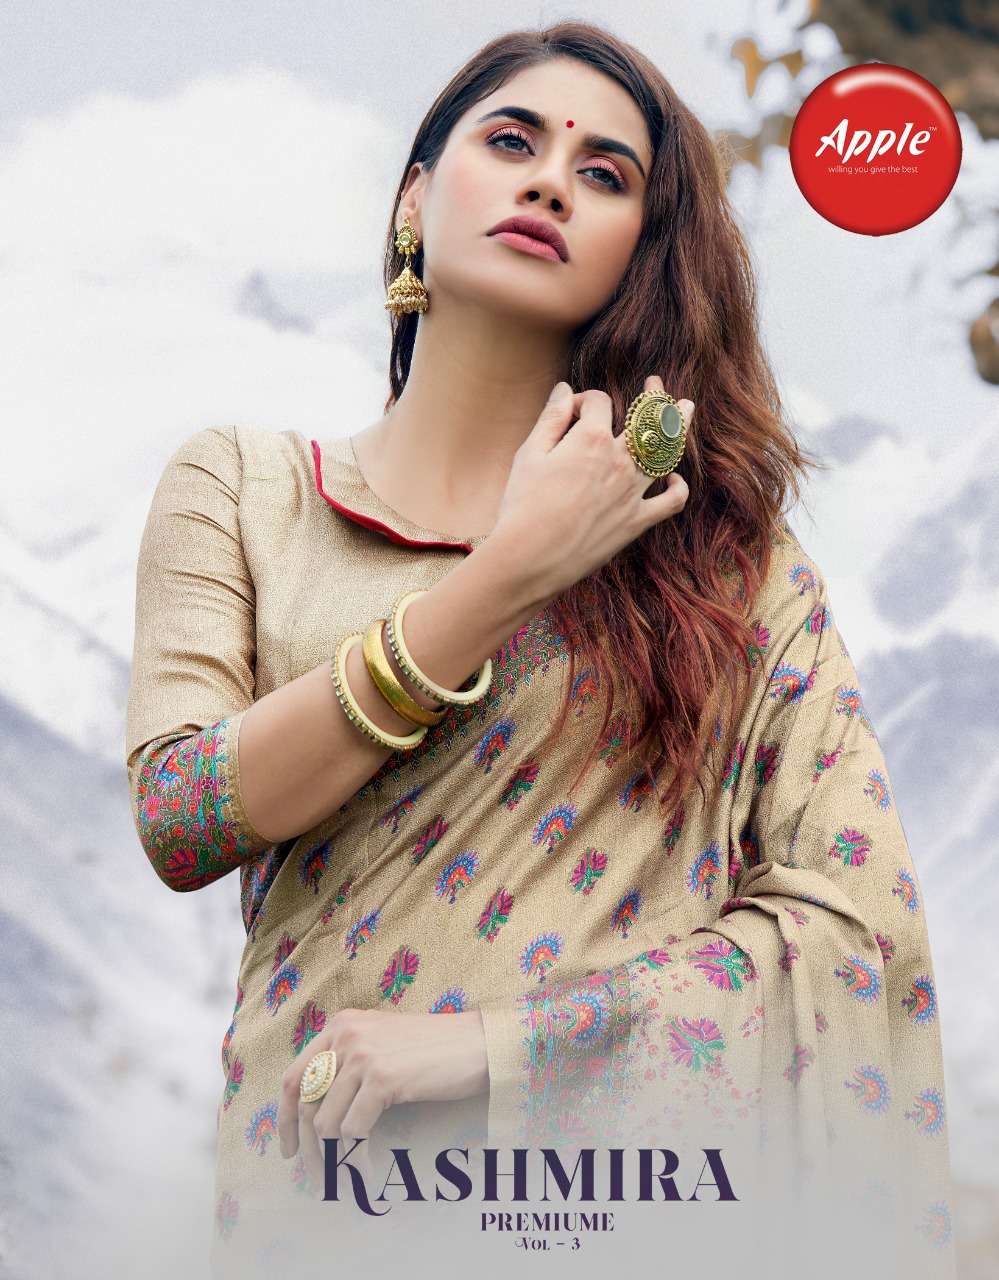 Apple Saree Kashmira Premium Vol 3 Pashmina Silk Digital Printed Sarees For Winter